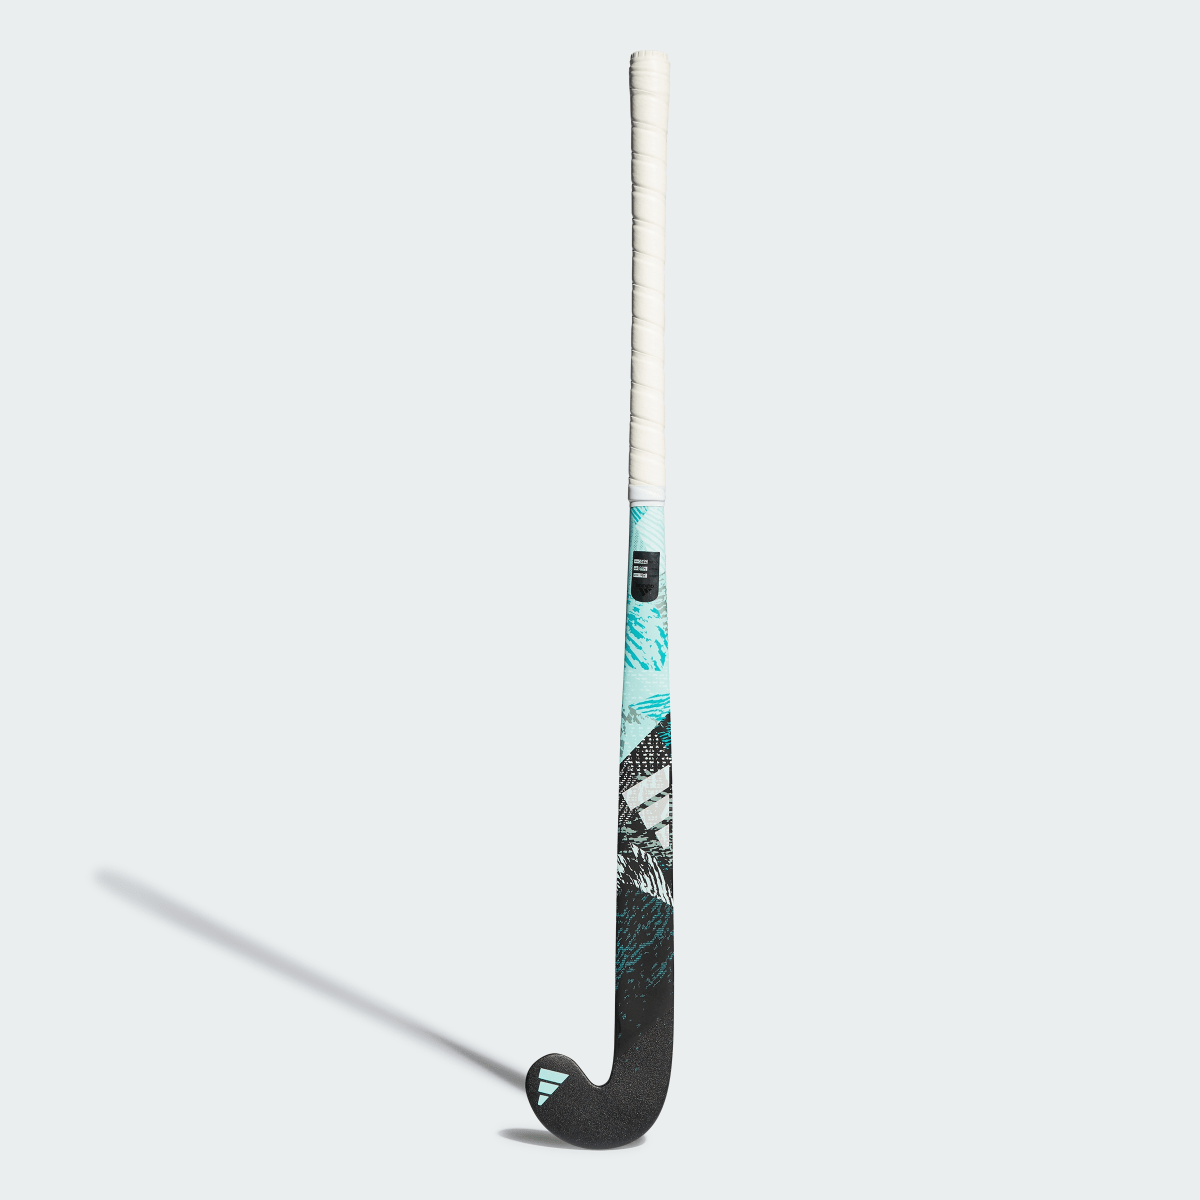 Adidas Stick de hockey hierba Youngstar.9 61 cm. 3